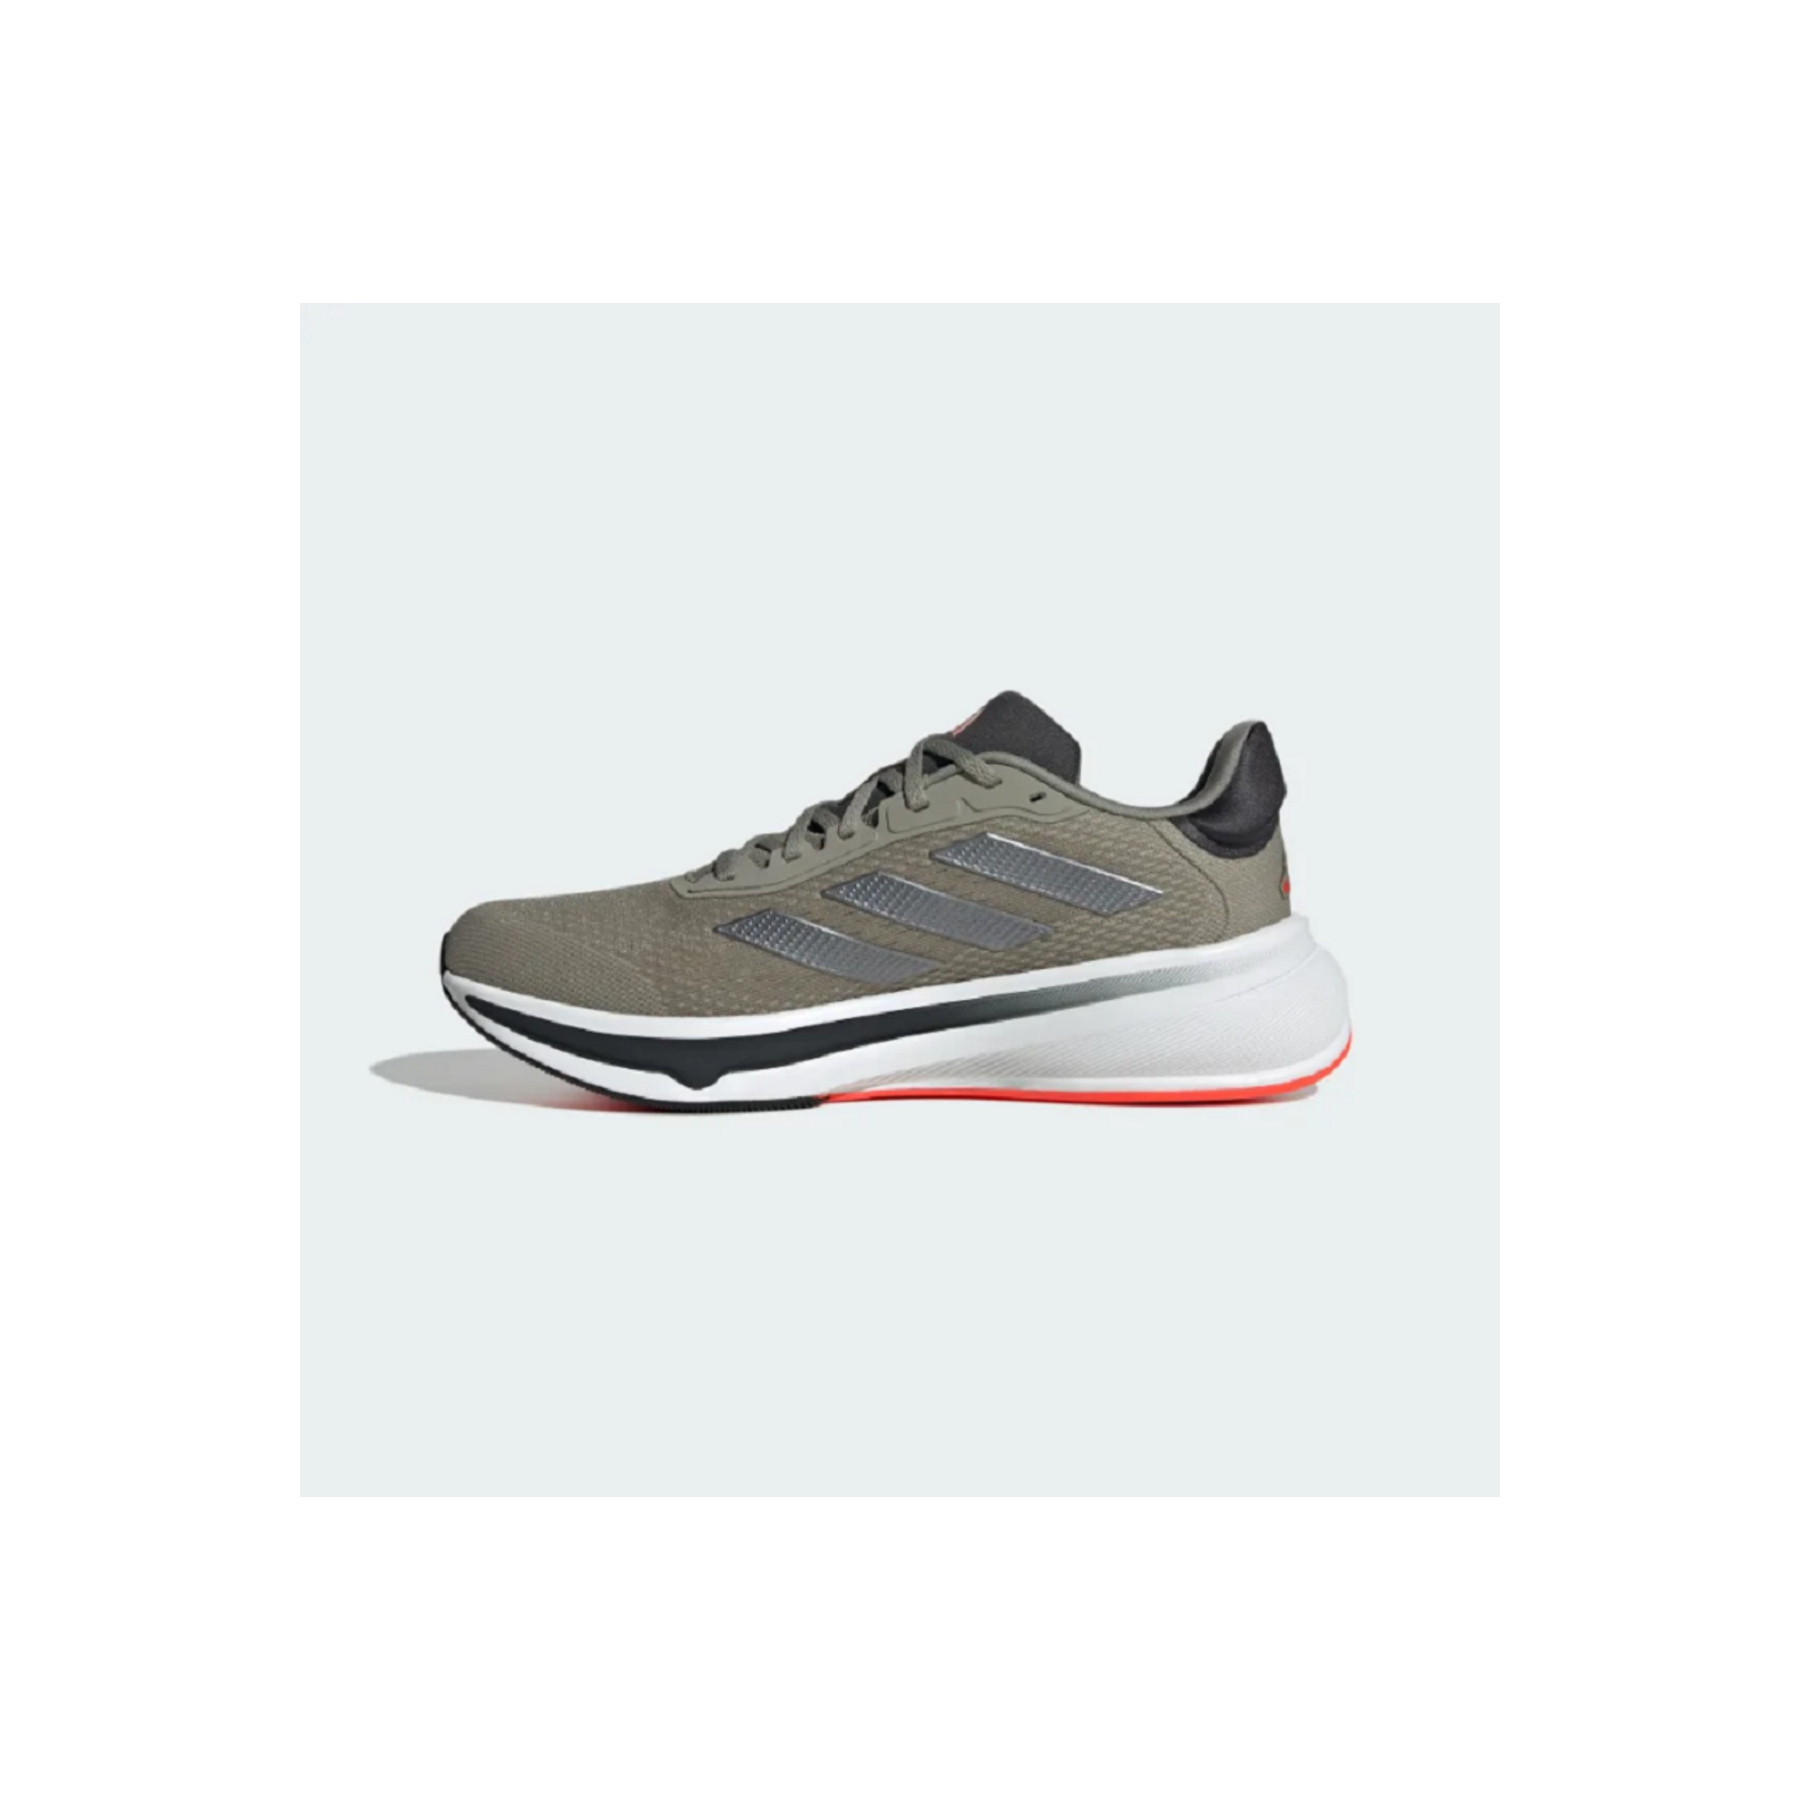 adidas Response Super Erkek Gümüş Rengi Koşu Ayakkabısı (IG1419)